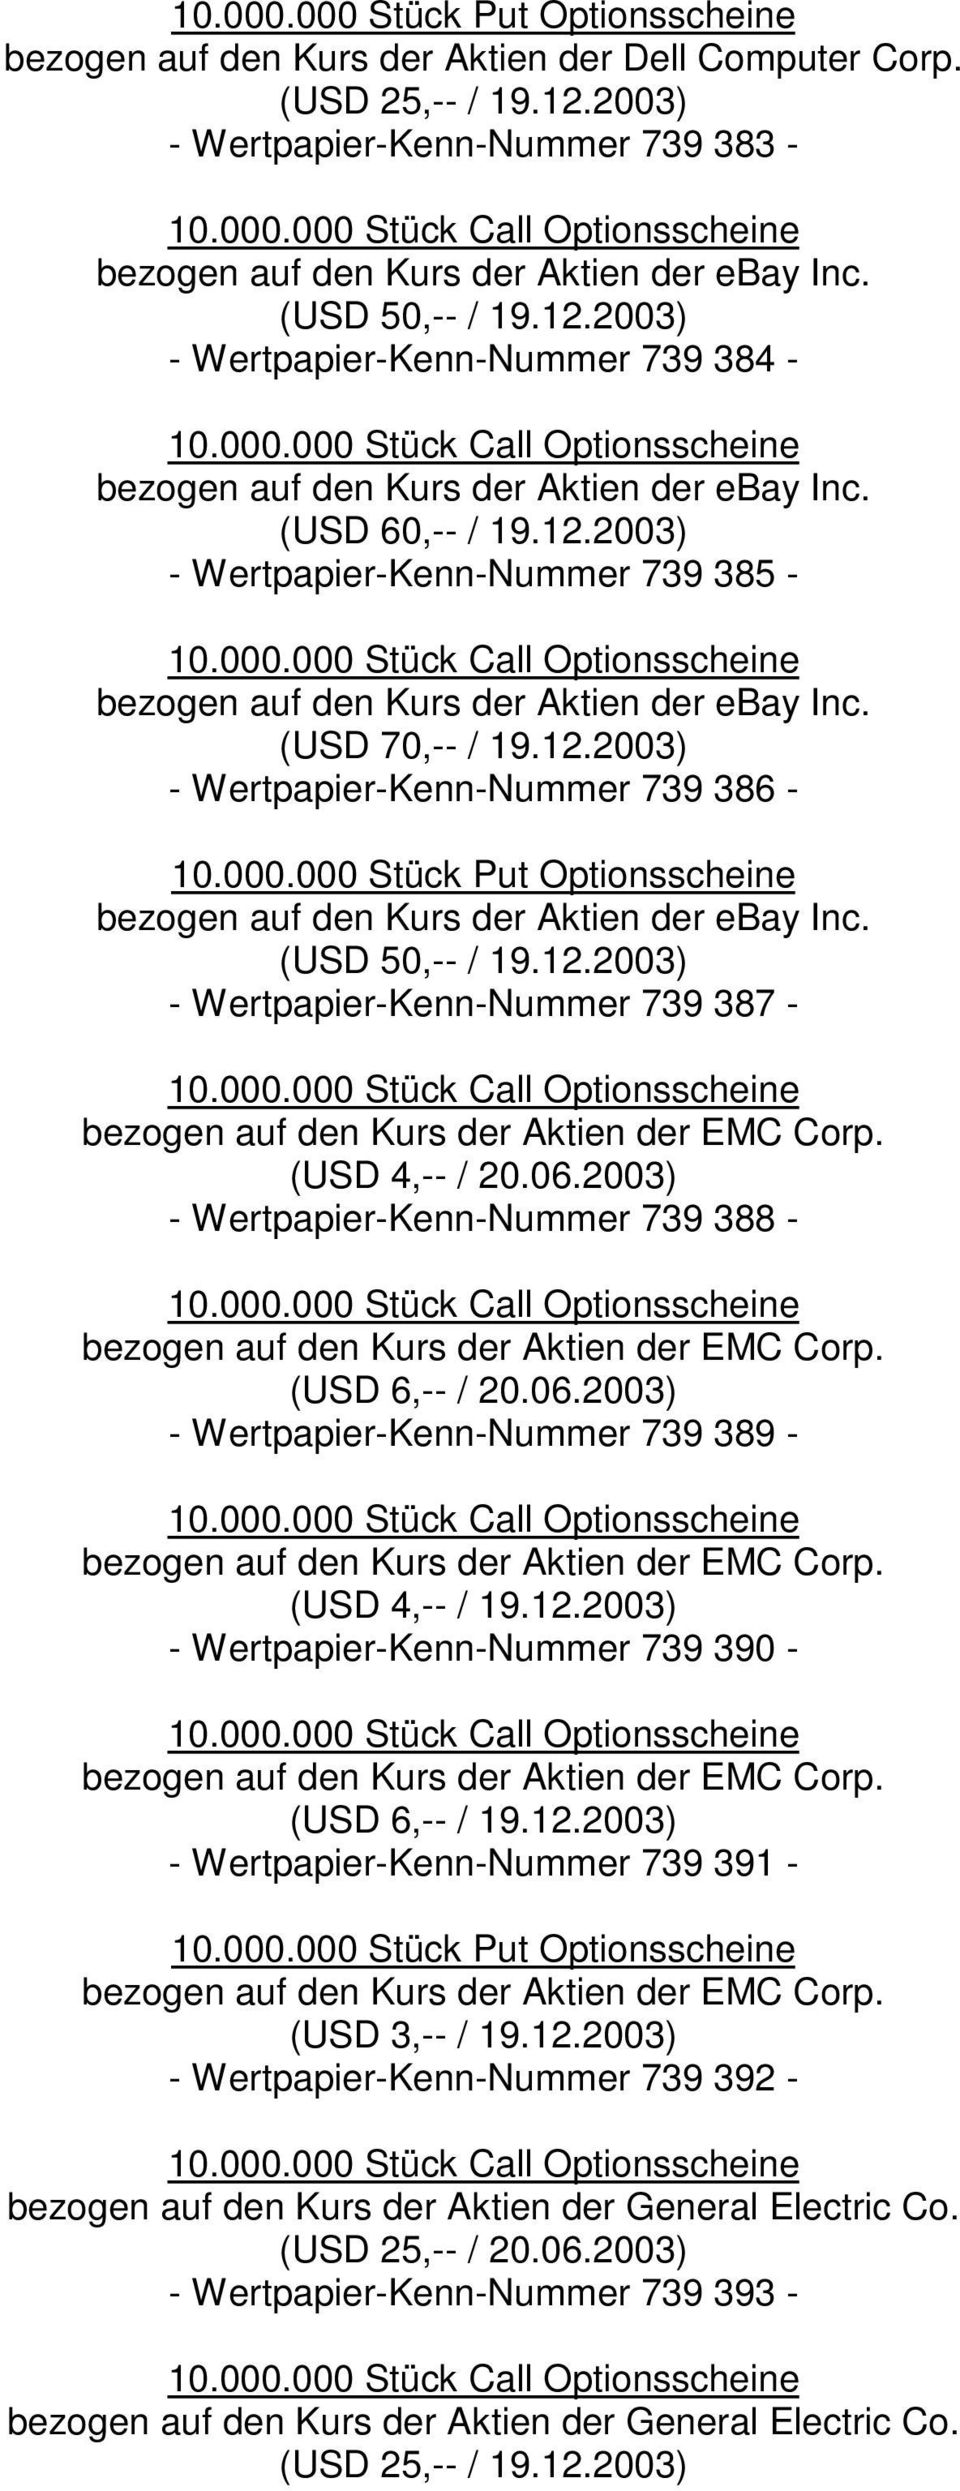 (USD 50,-- / 19.12.2003) - Wertpapier-Kenn-Nummer 739 387 - bezogen auf den Kurs der Aktien der EMC Corp. (USD 4,-- / 20.06.